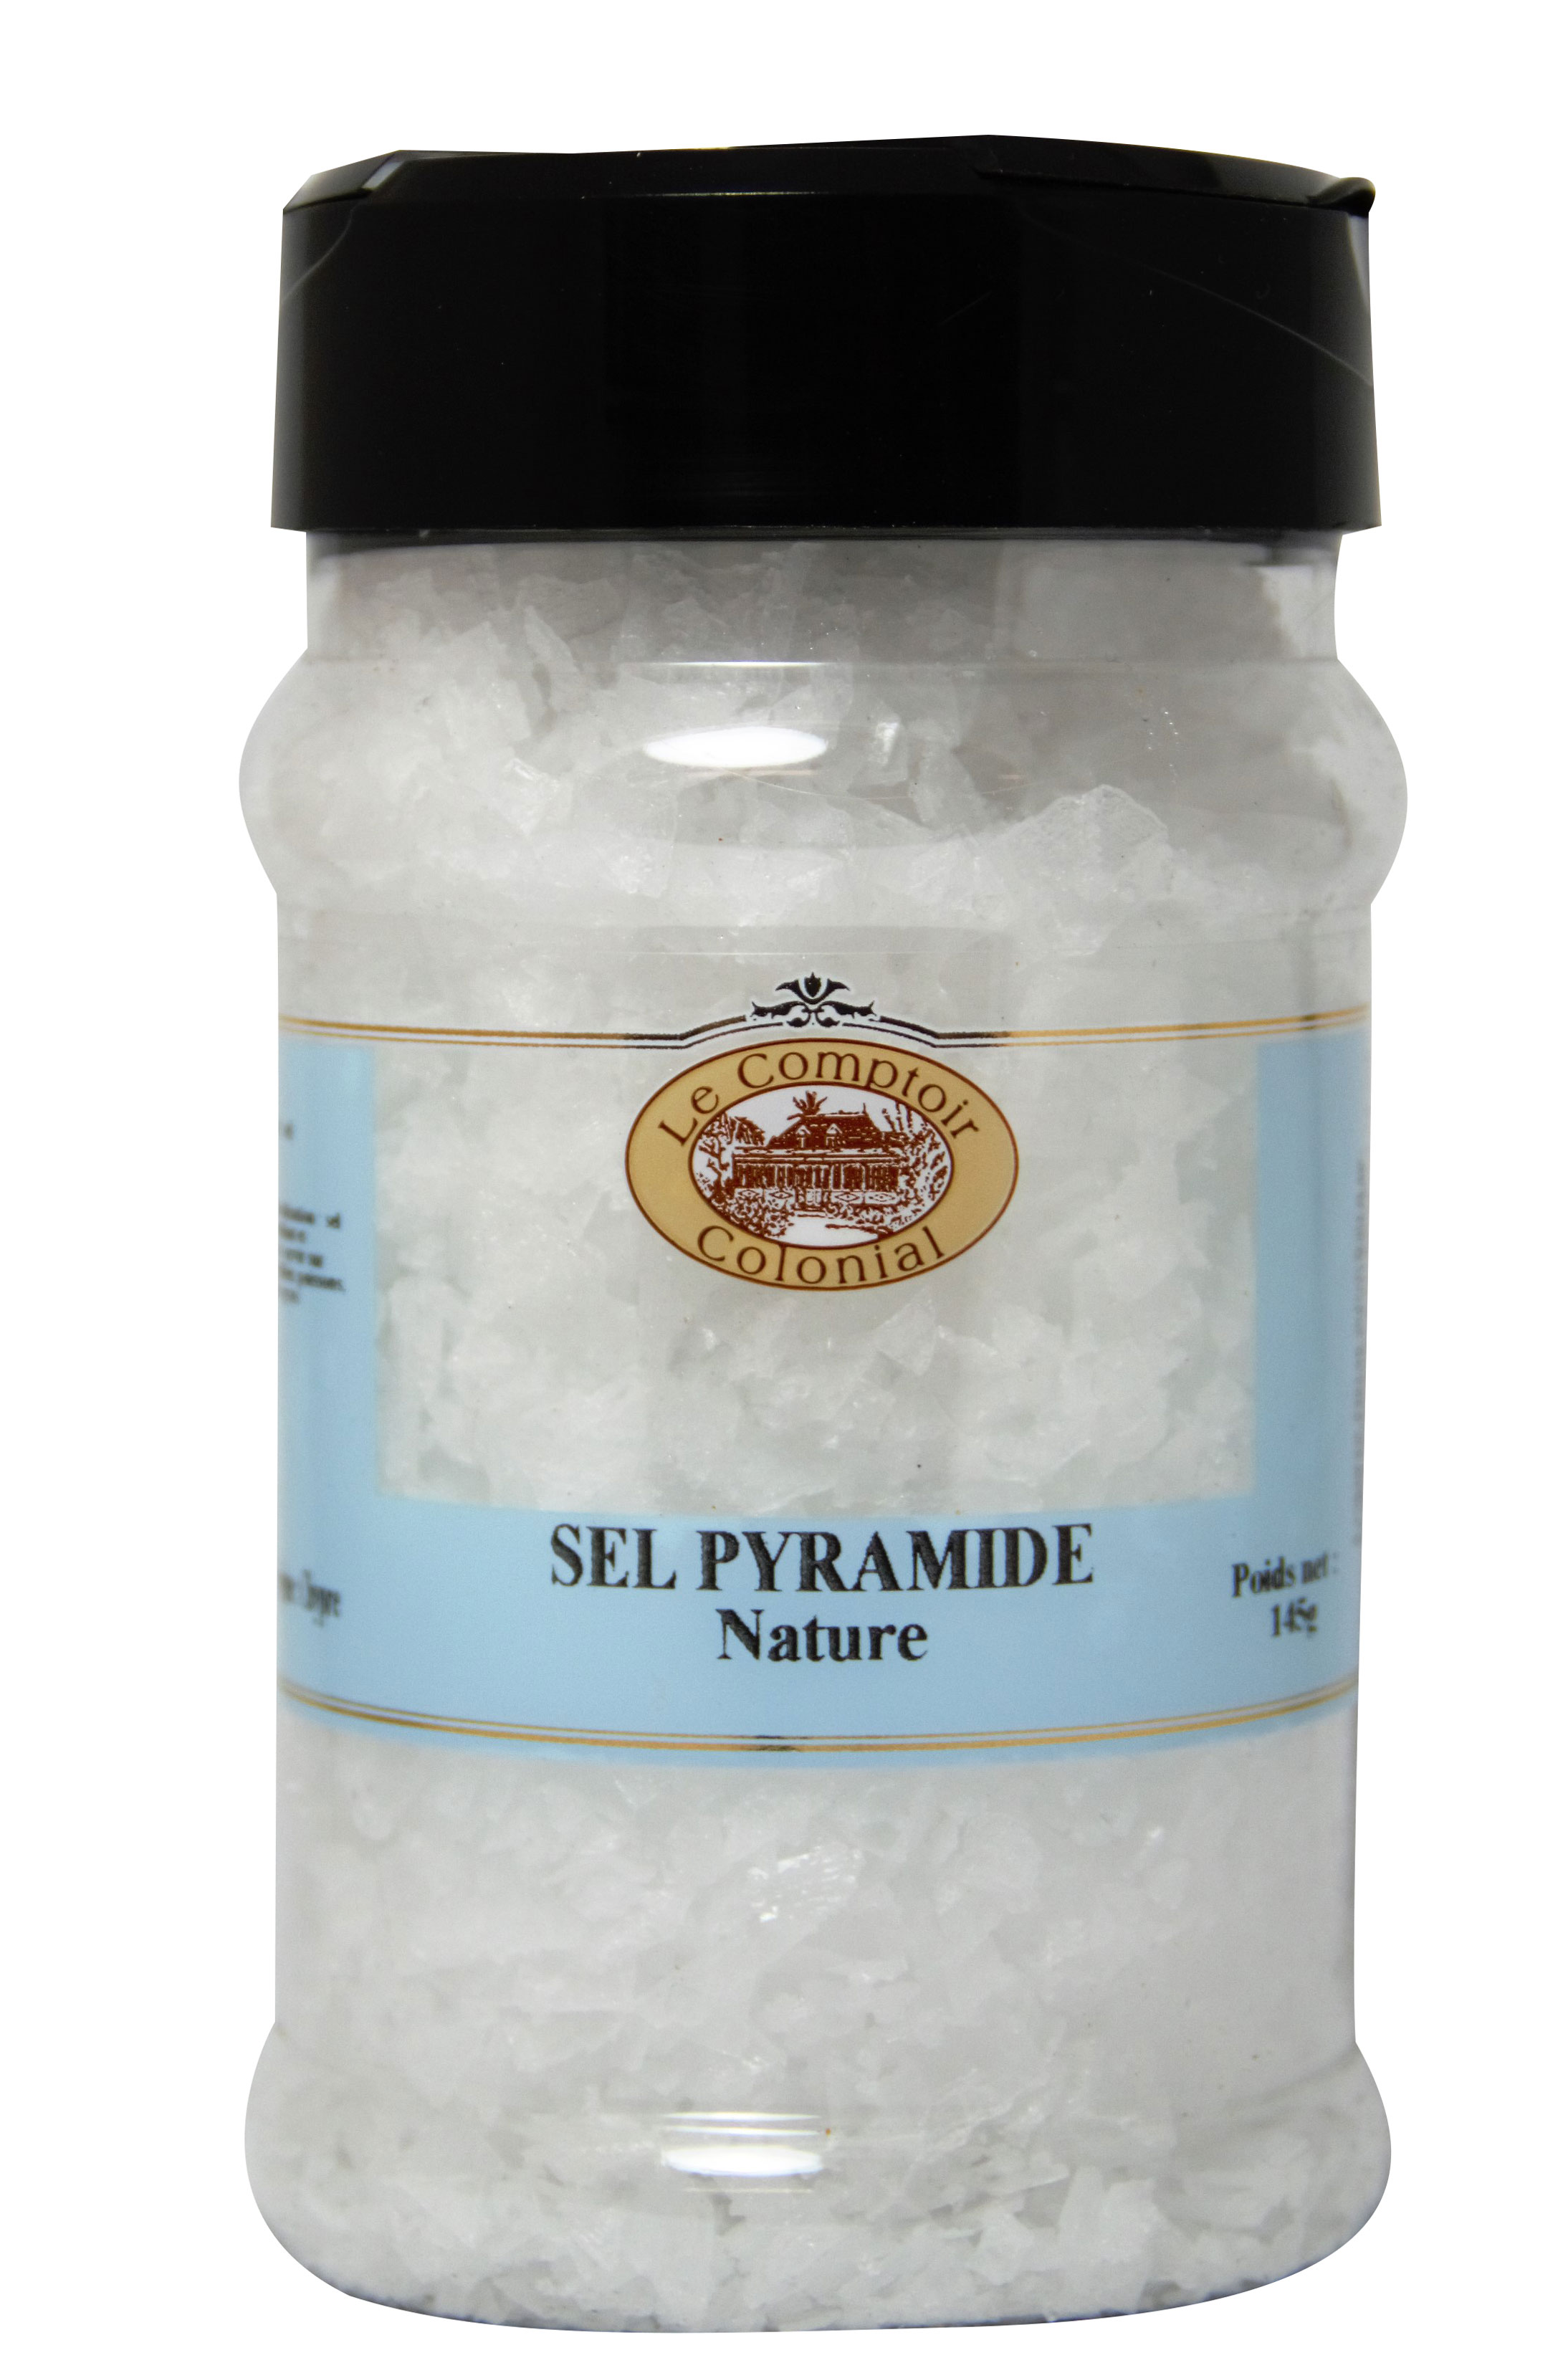 Le sel - Tout sur le sel, histoire, variétés, usage en cuisine et en  pâtisserie